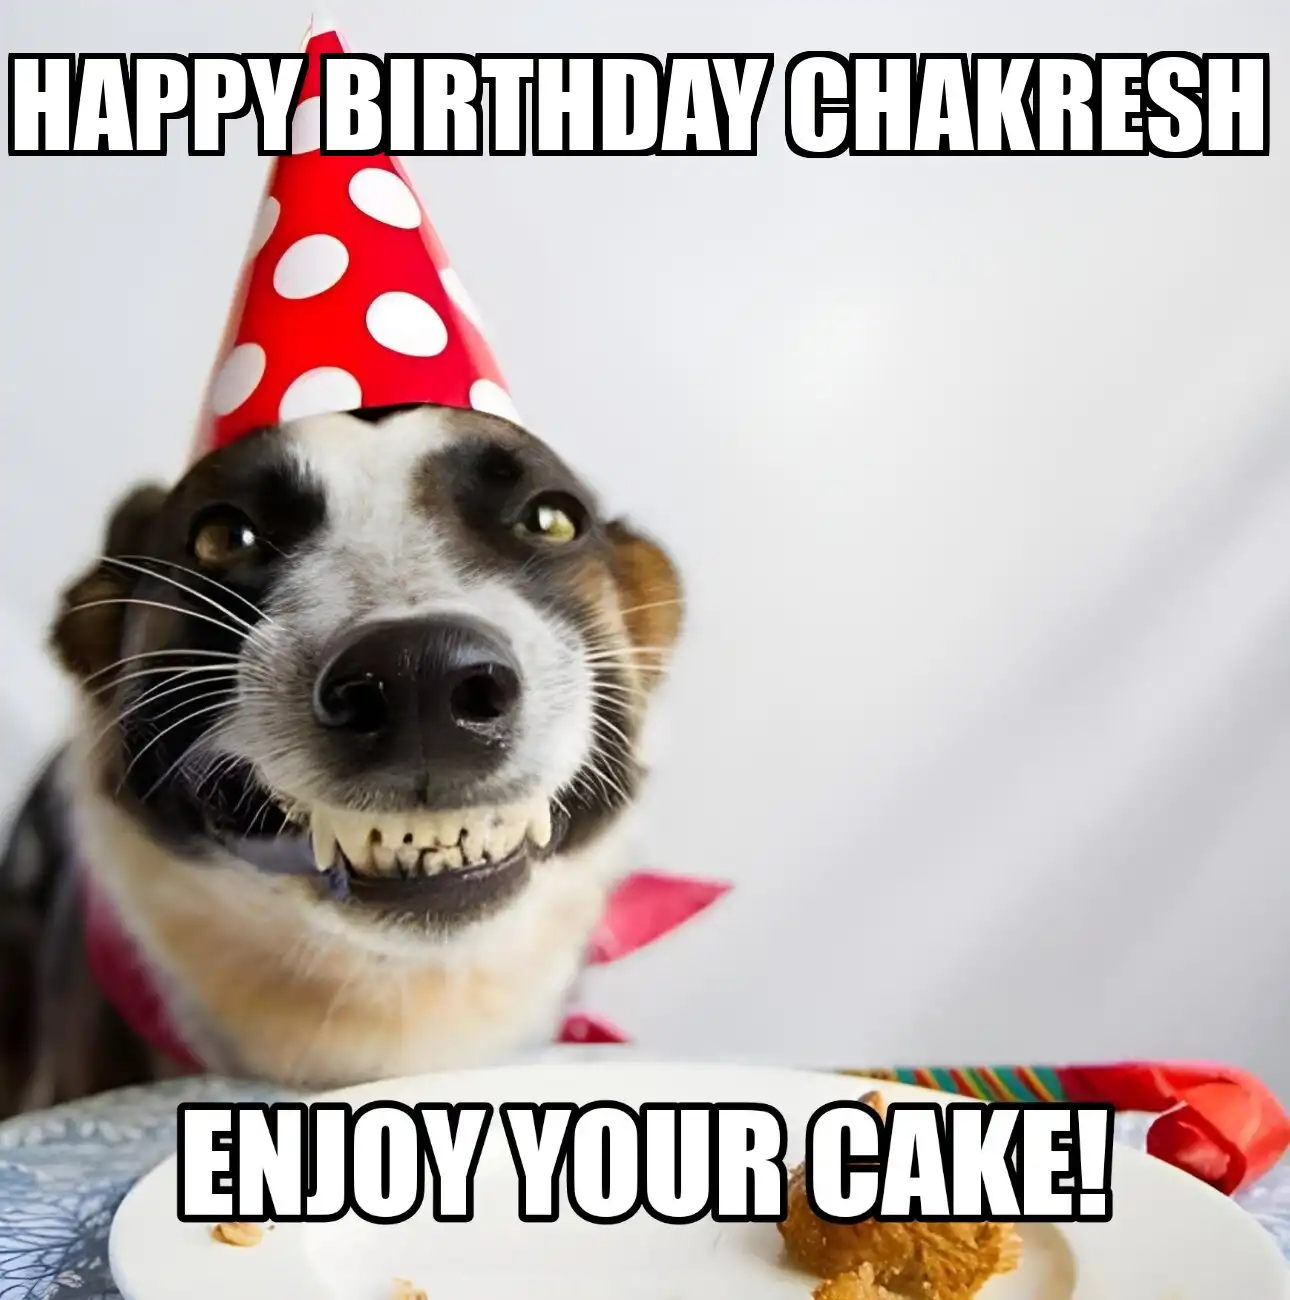 Happy Birthday Chakresh Enjoy Your Cake Dog Meme